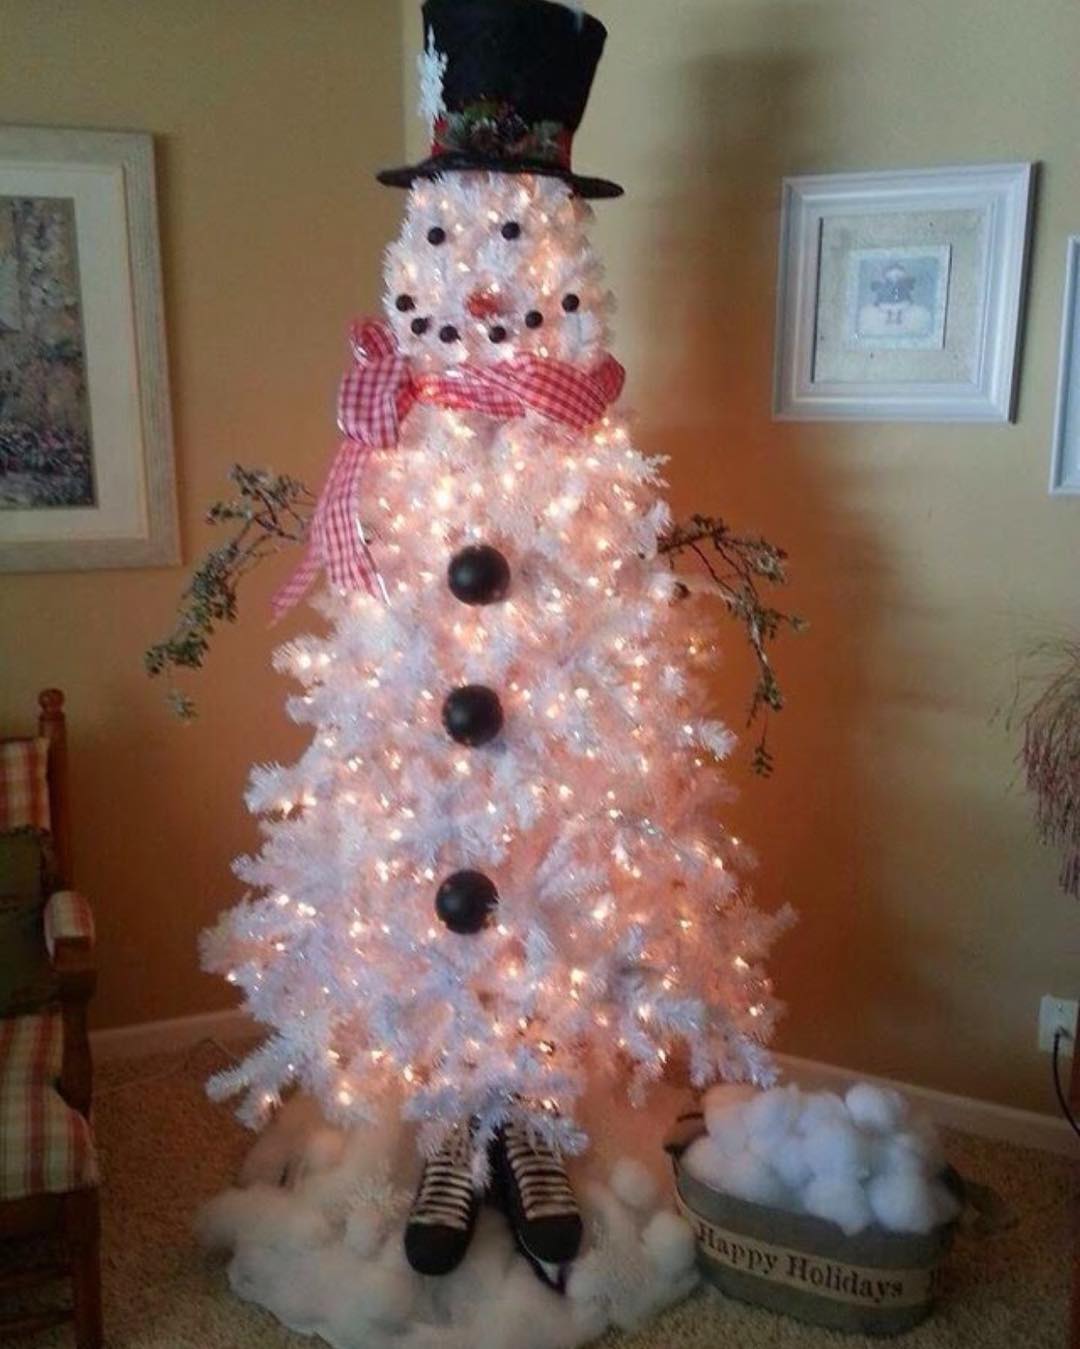 A snowman Christmas tree! Such creativity happens around Christmas! DIY Snowman Christmas Tree Ornaments Ideas